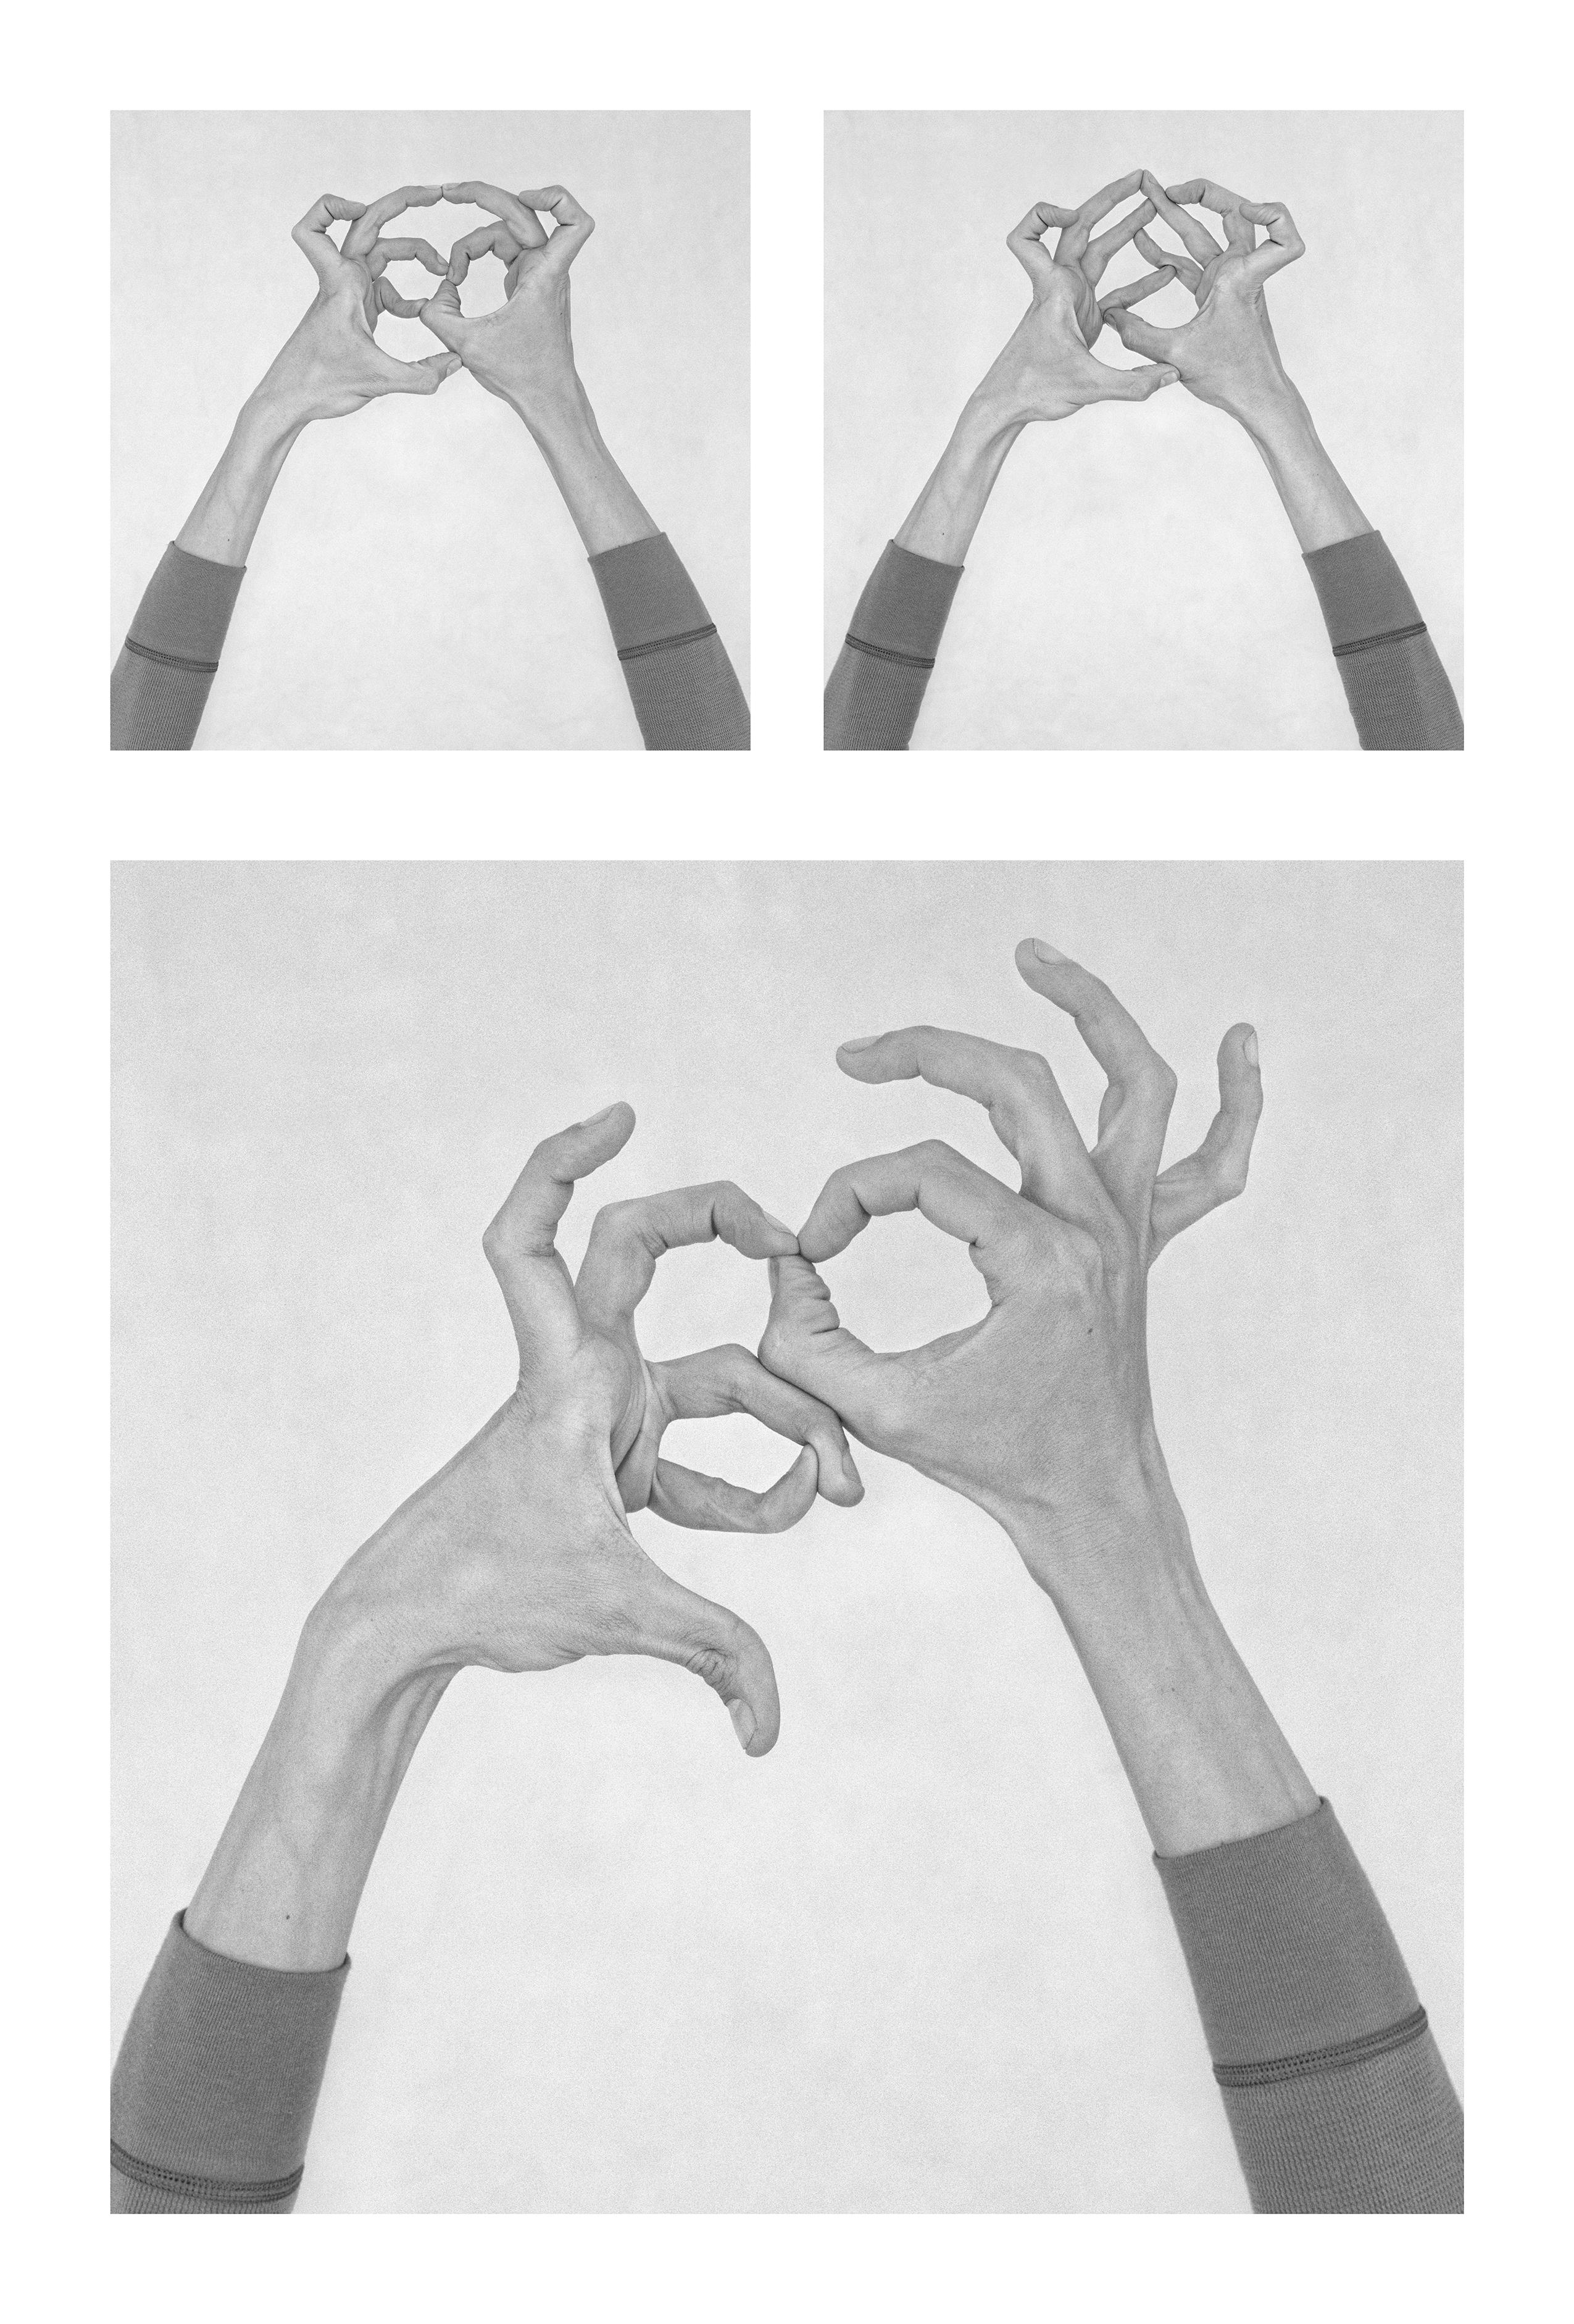 Nico Baixas / Gos-com-fuig Figurative Photograph - Untitled X, Untitled XXXIX, and Untitled XXIX, Hands. Triptych